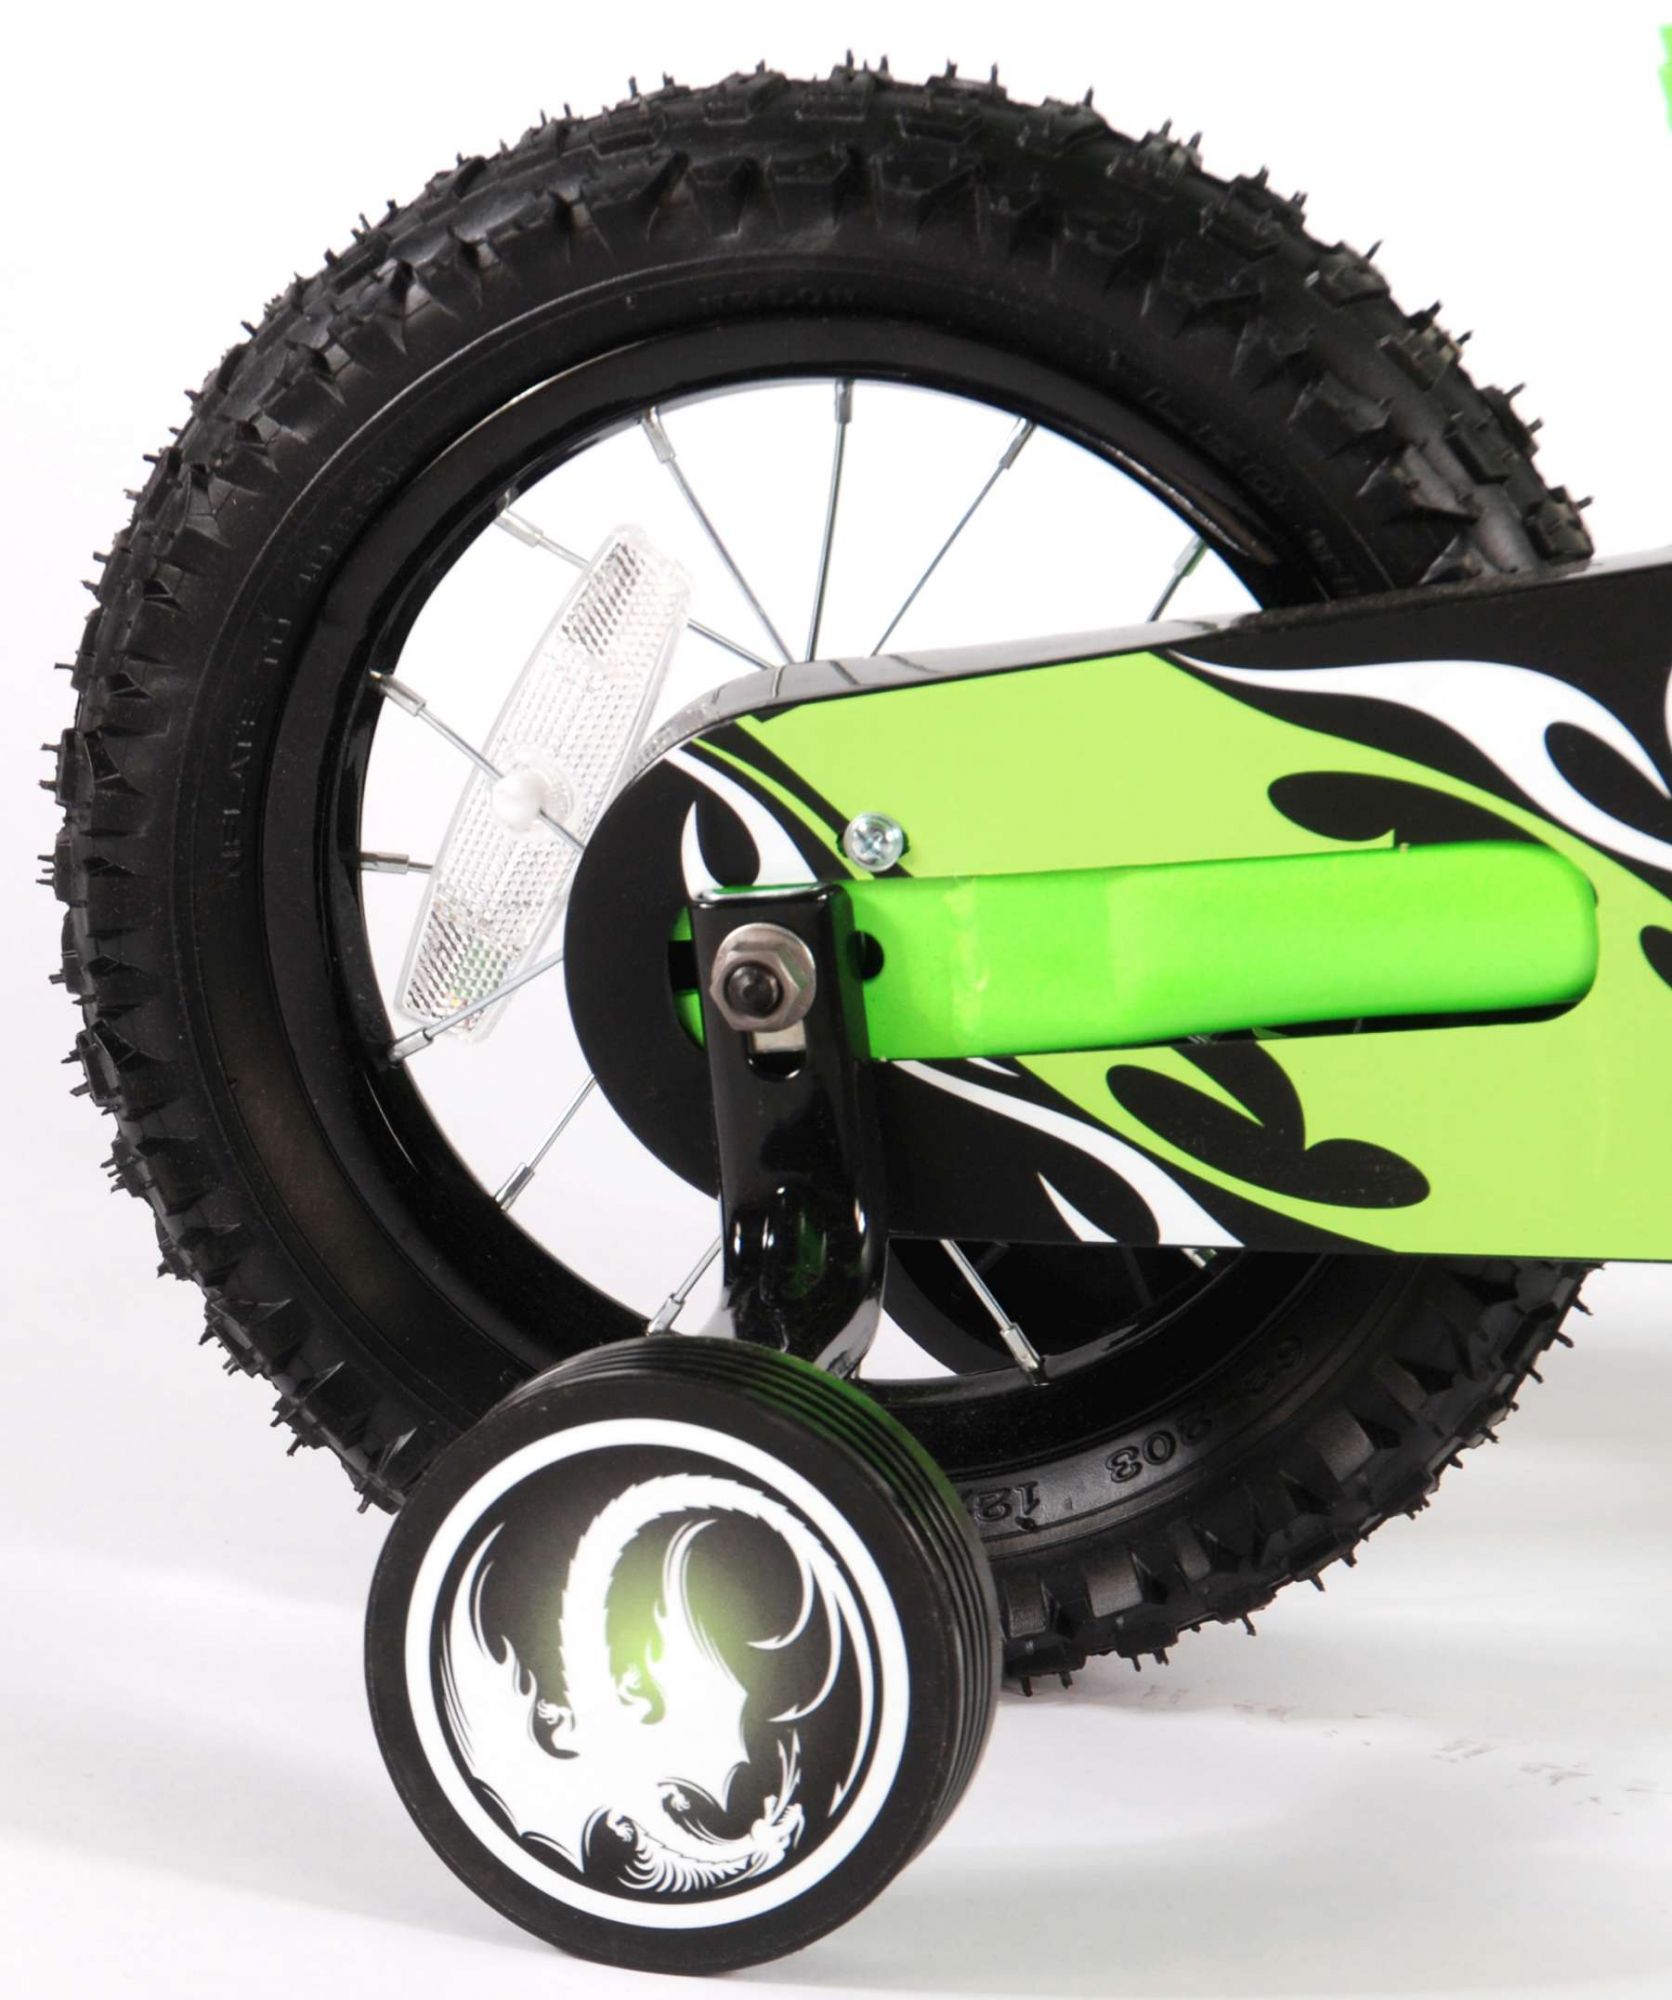 Kinderfahrrad Motobike für Jungen 12 Zoll Kinderrad in Grün